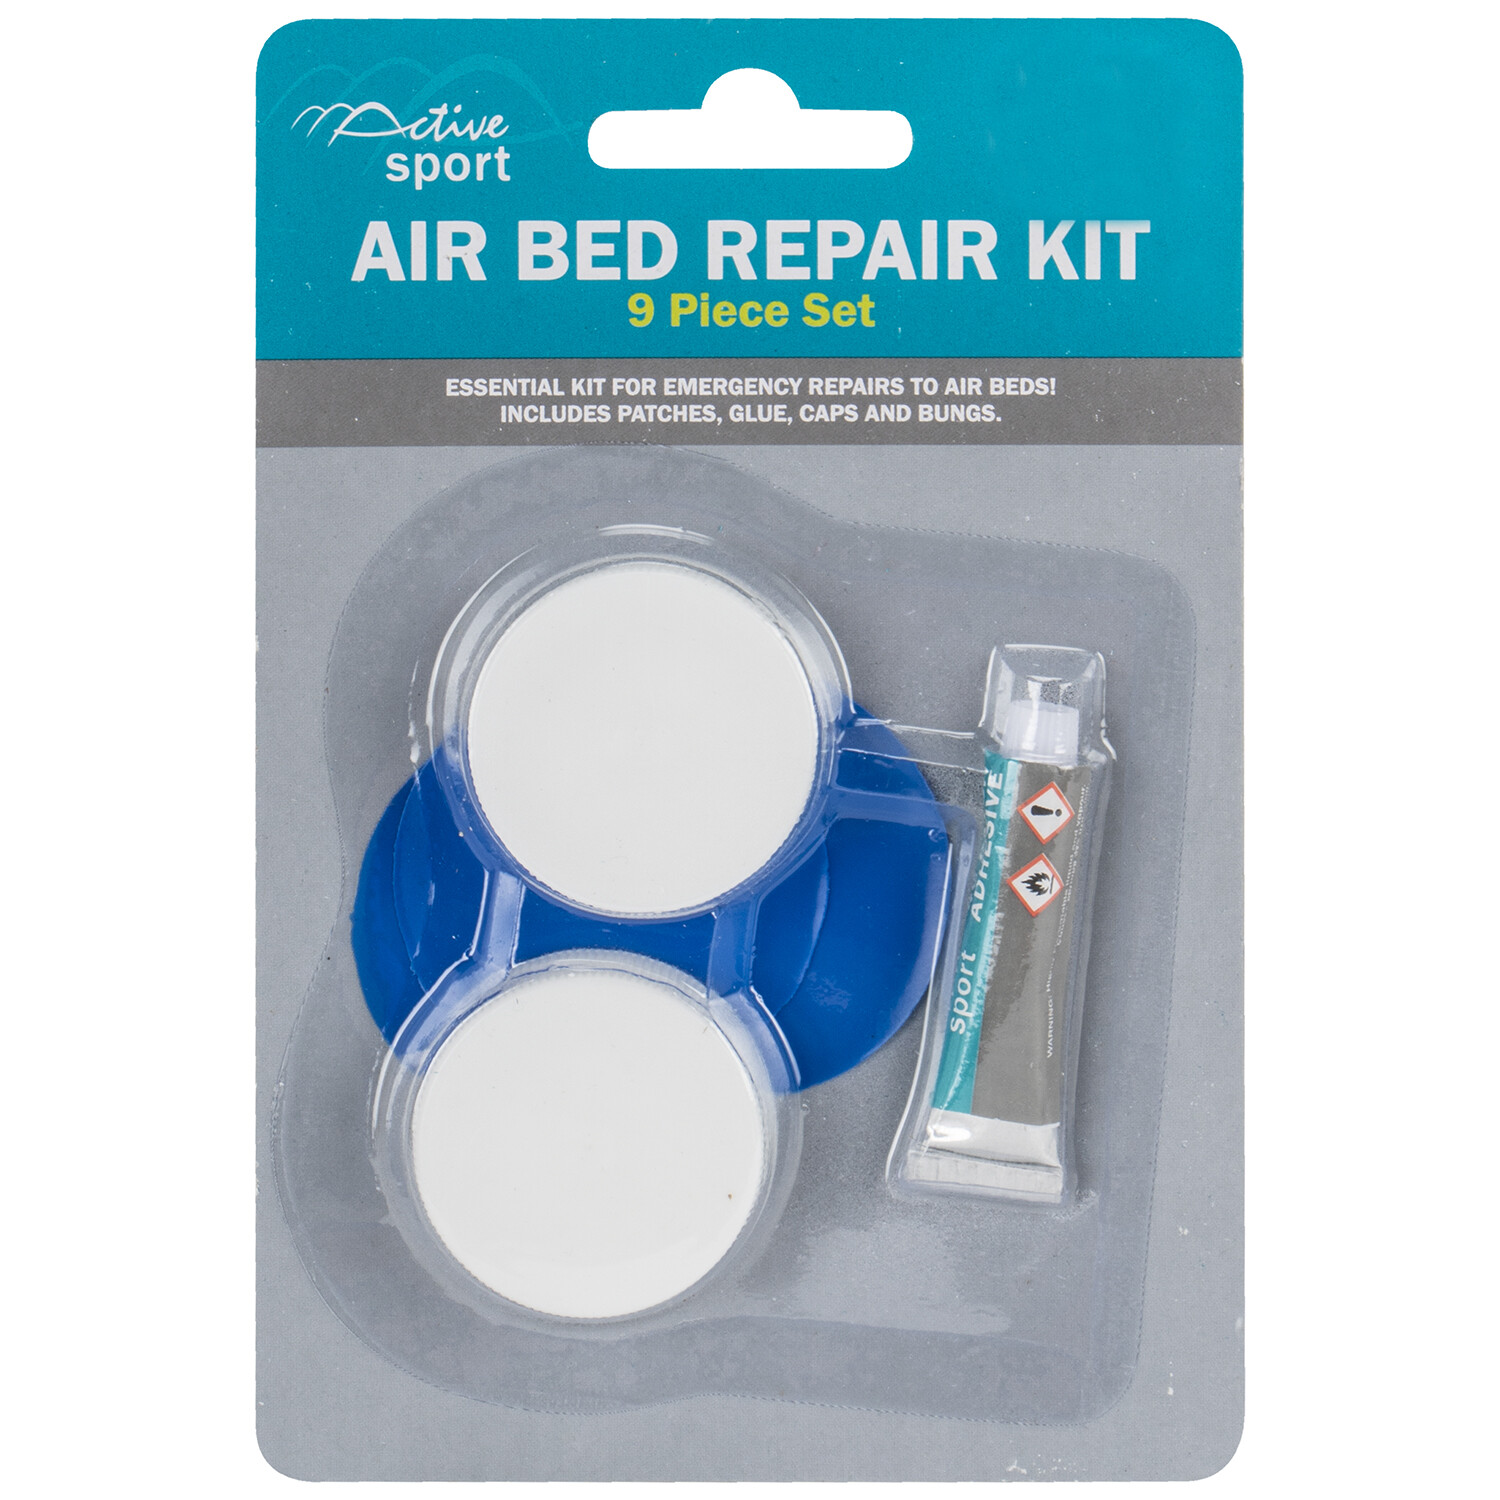 9 Piece Air Bed Repair Kit